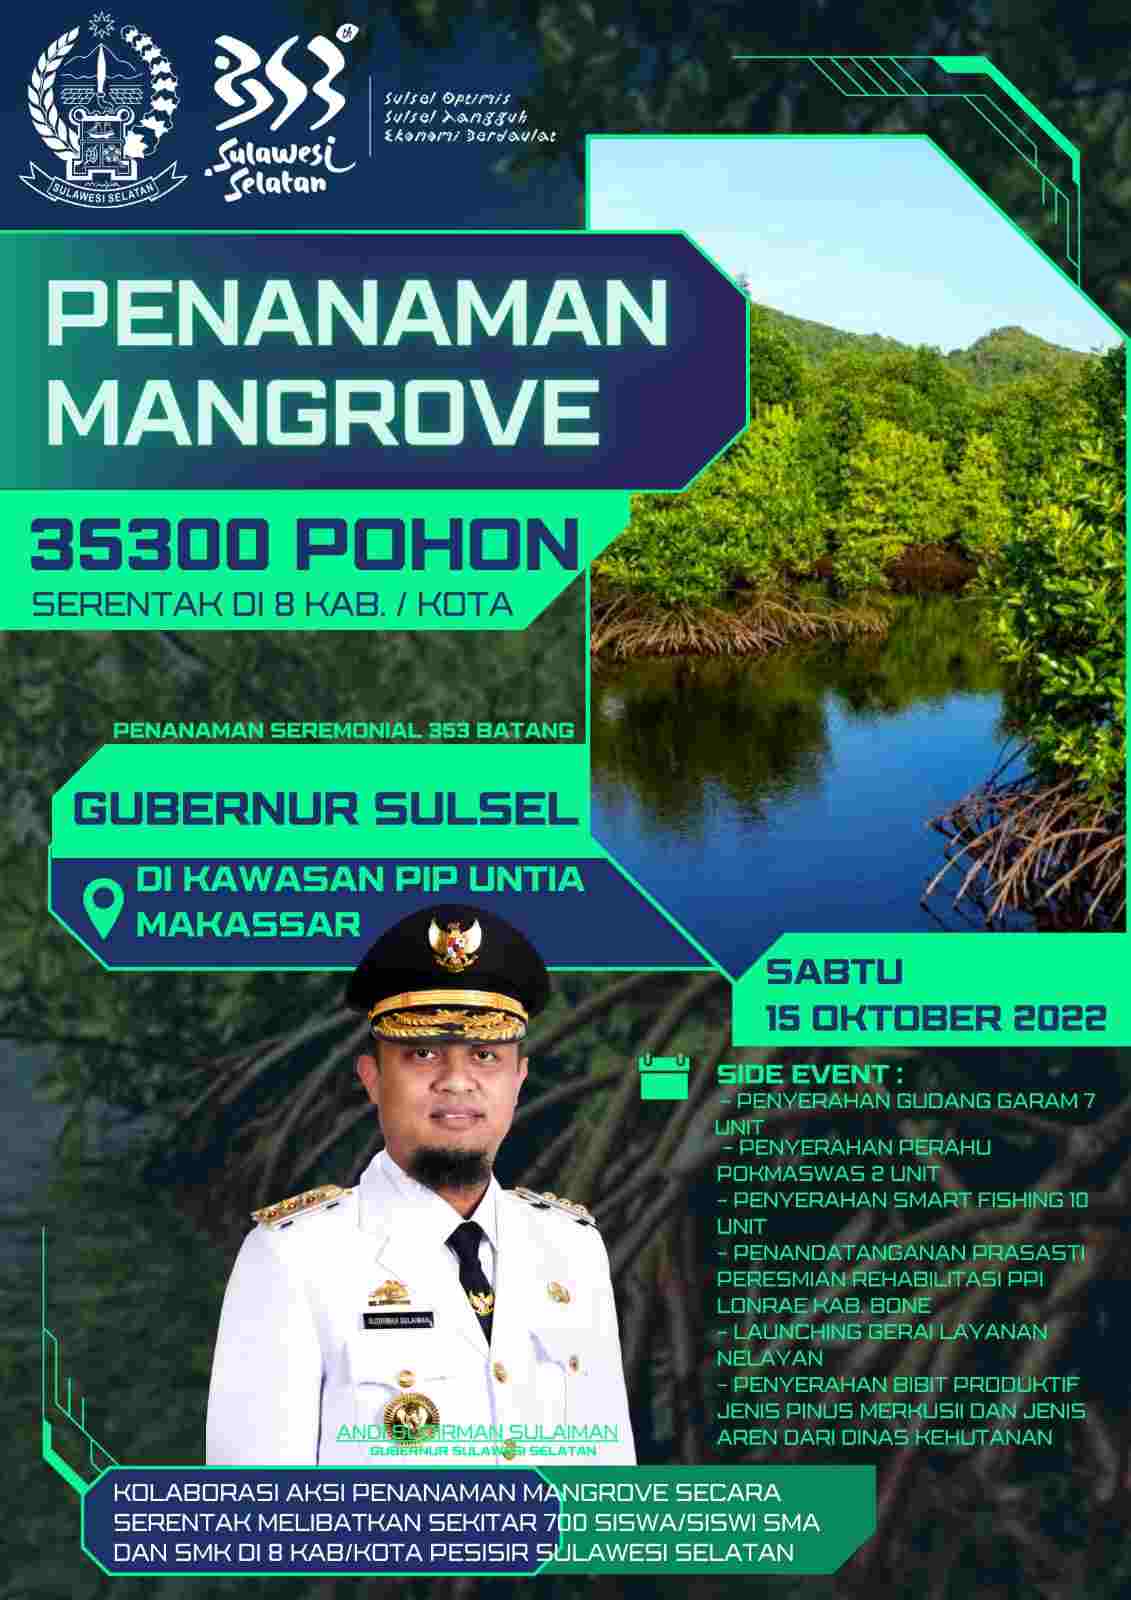 Gubernur Sulsel akan Pimpin Penanaman Mangrove Besok